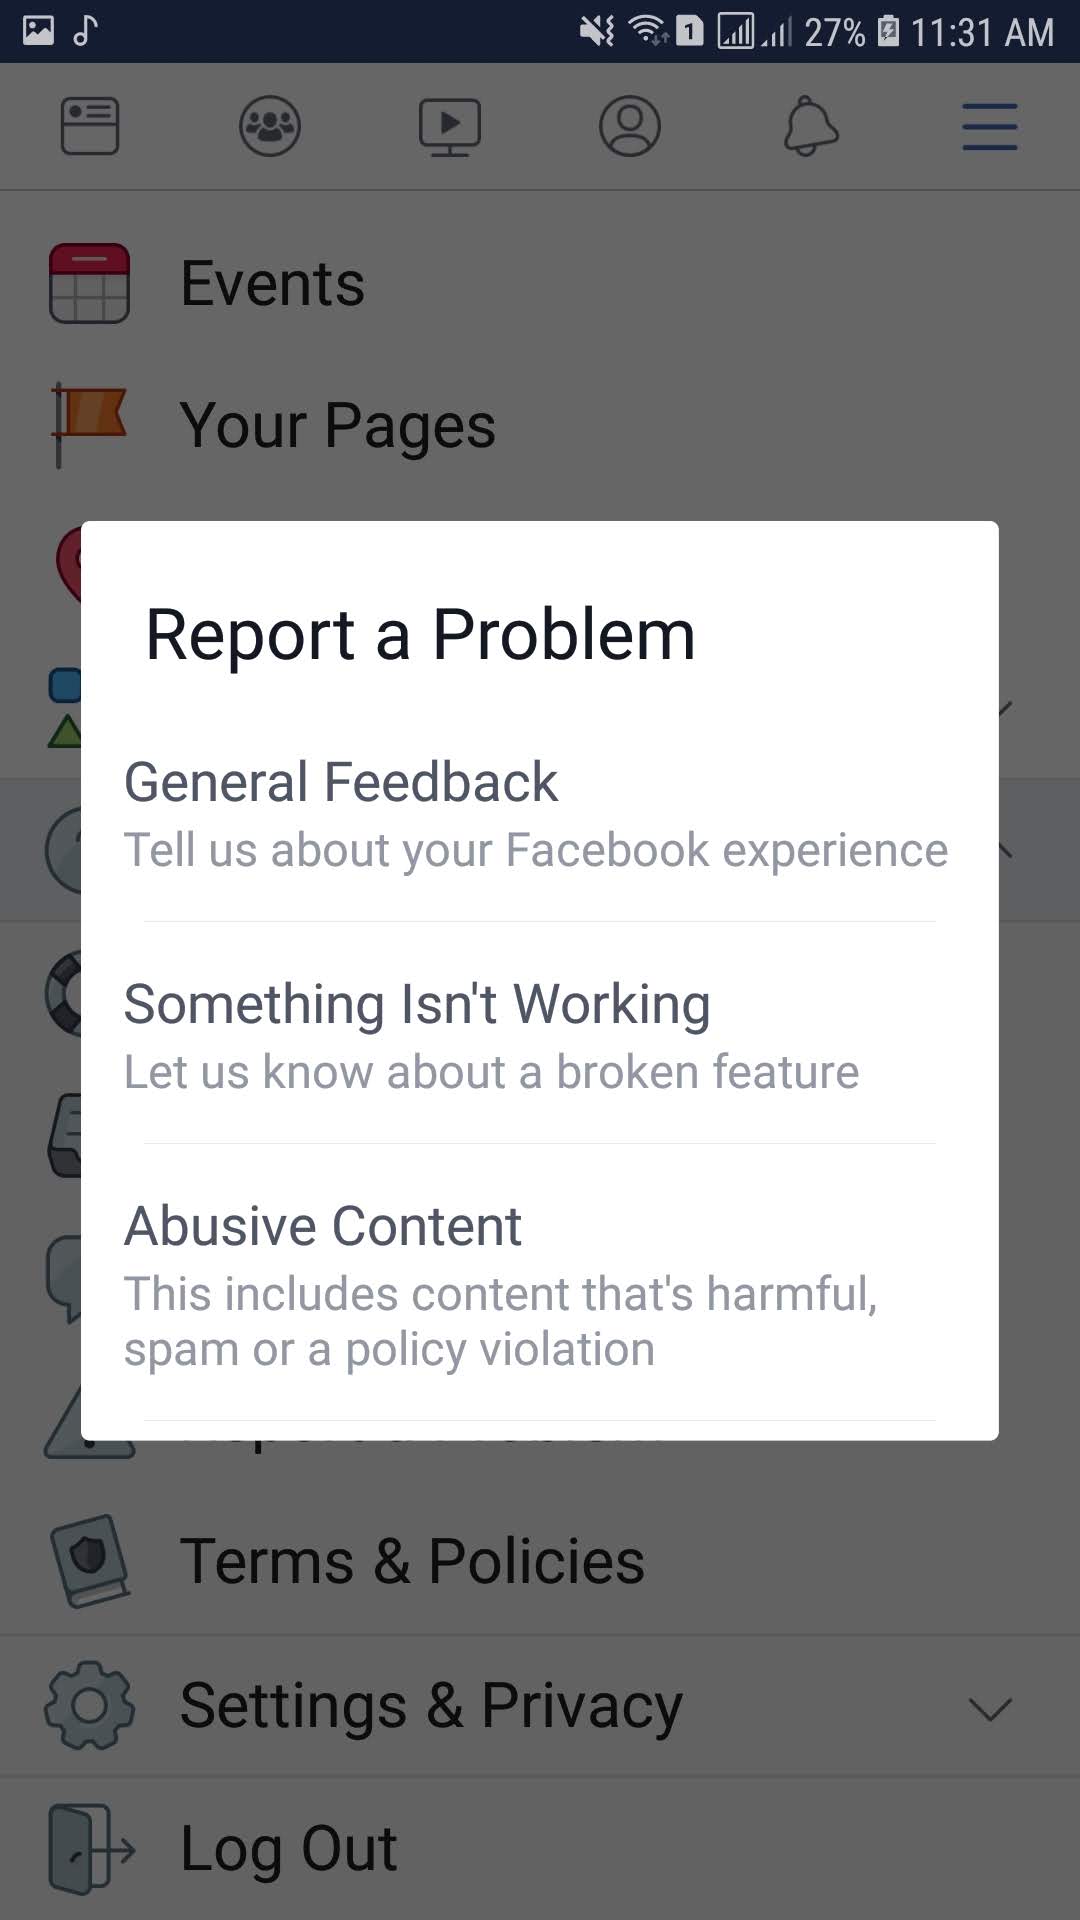 اختر تصنيف المشكلة التى تواجهة فى تطبيق فيسبوك لكى يتم اصلاحها فوراً